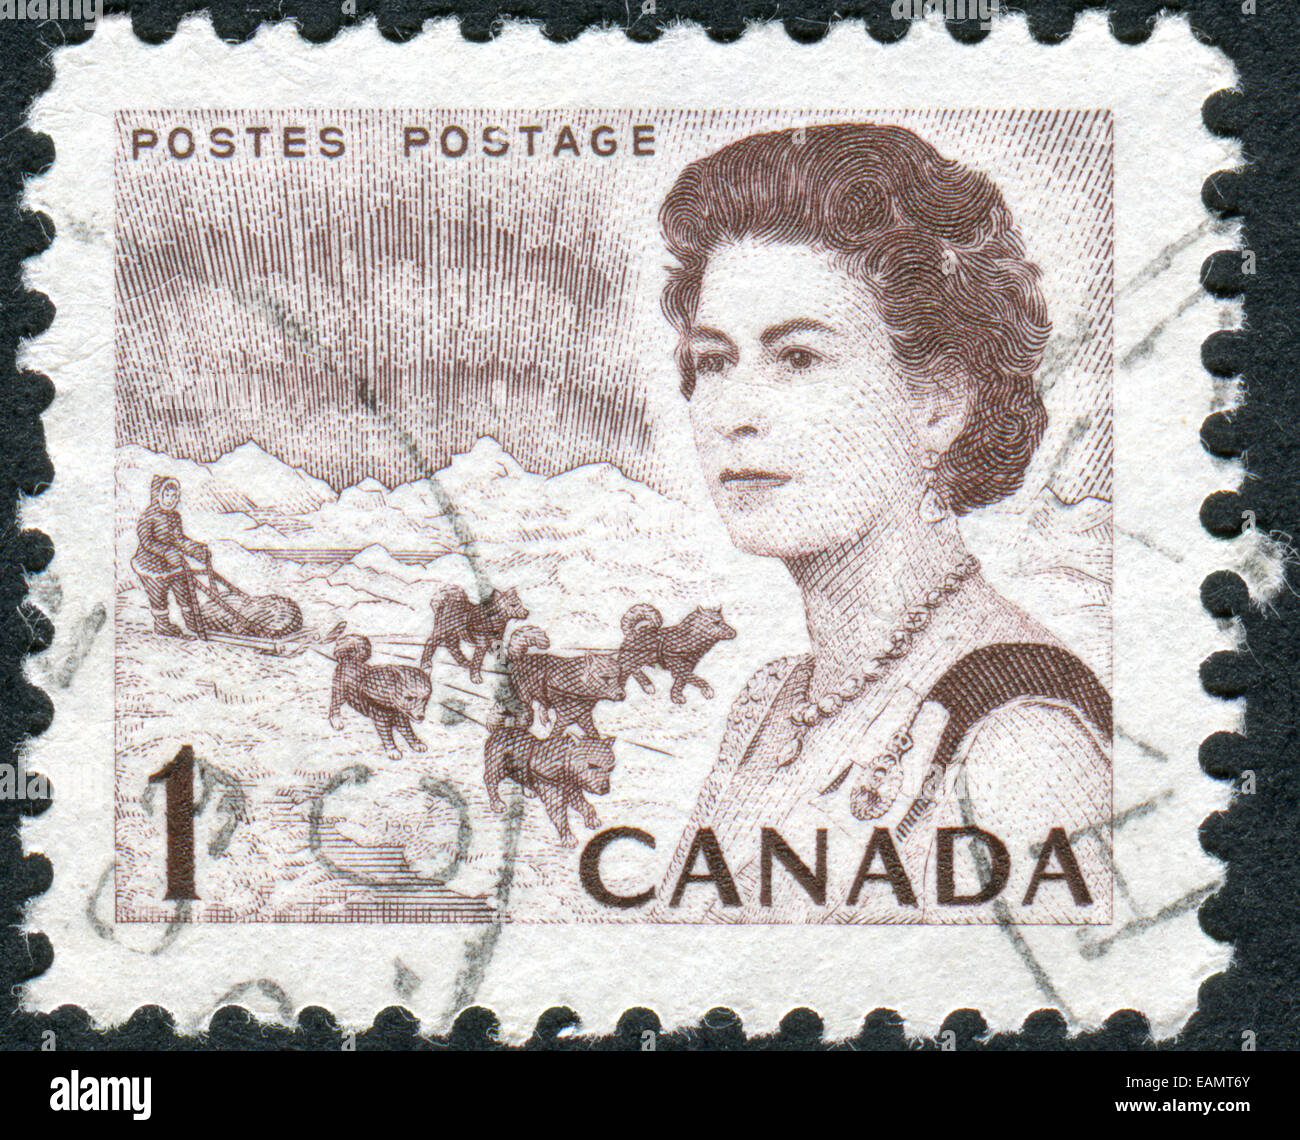 Francobollo stampato in Canada, mostra luci del nord e un cane, un ritratto della regina Elisabetta II Foto Stock